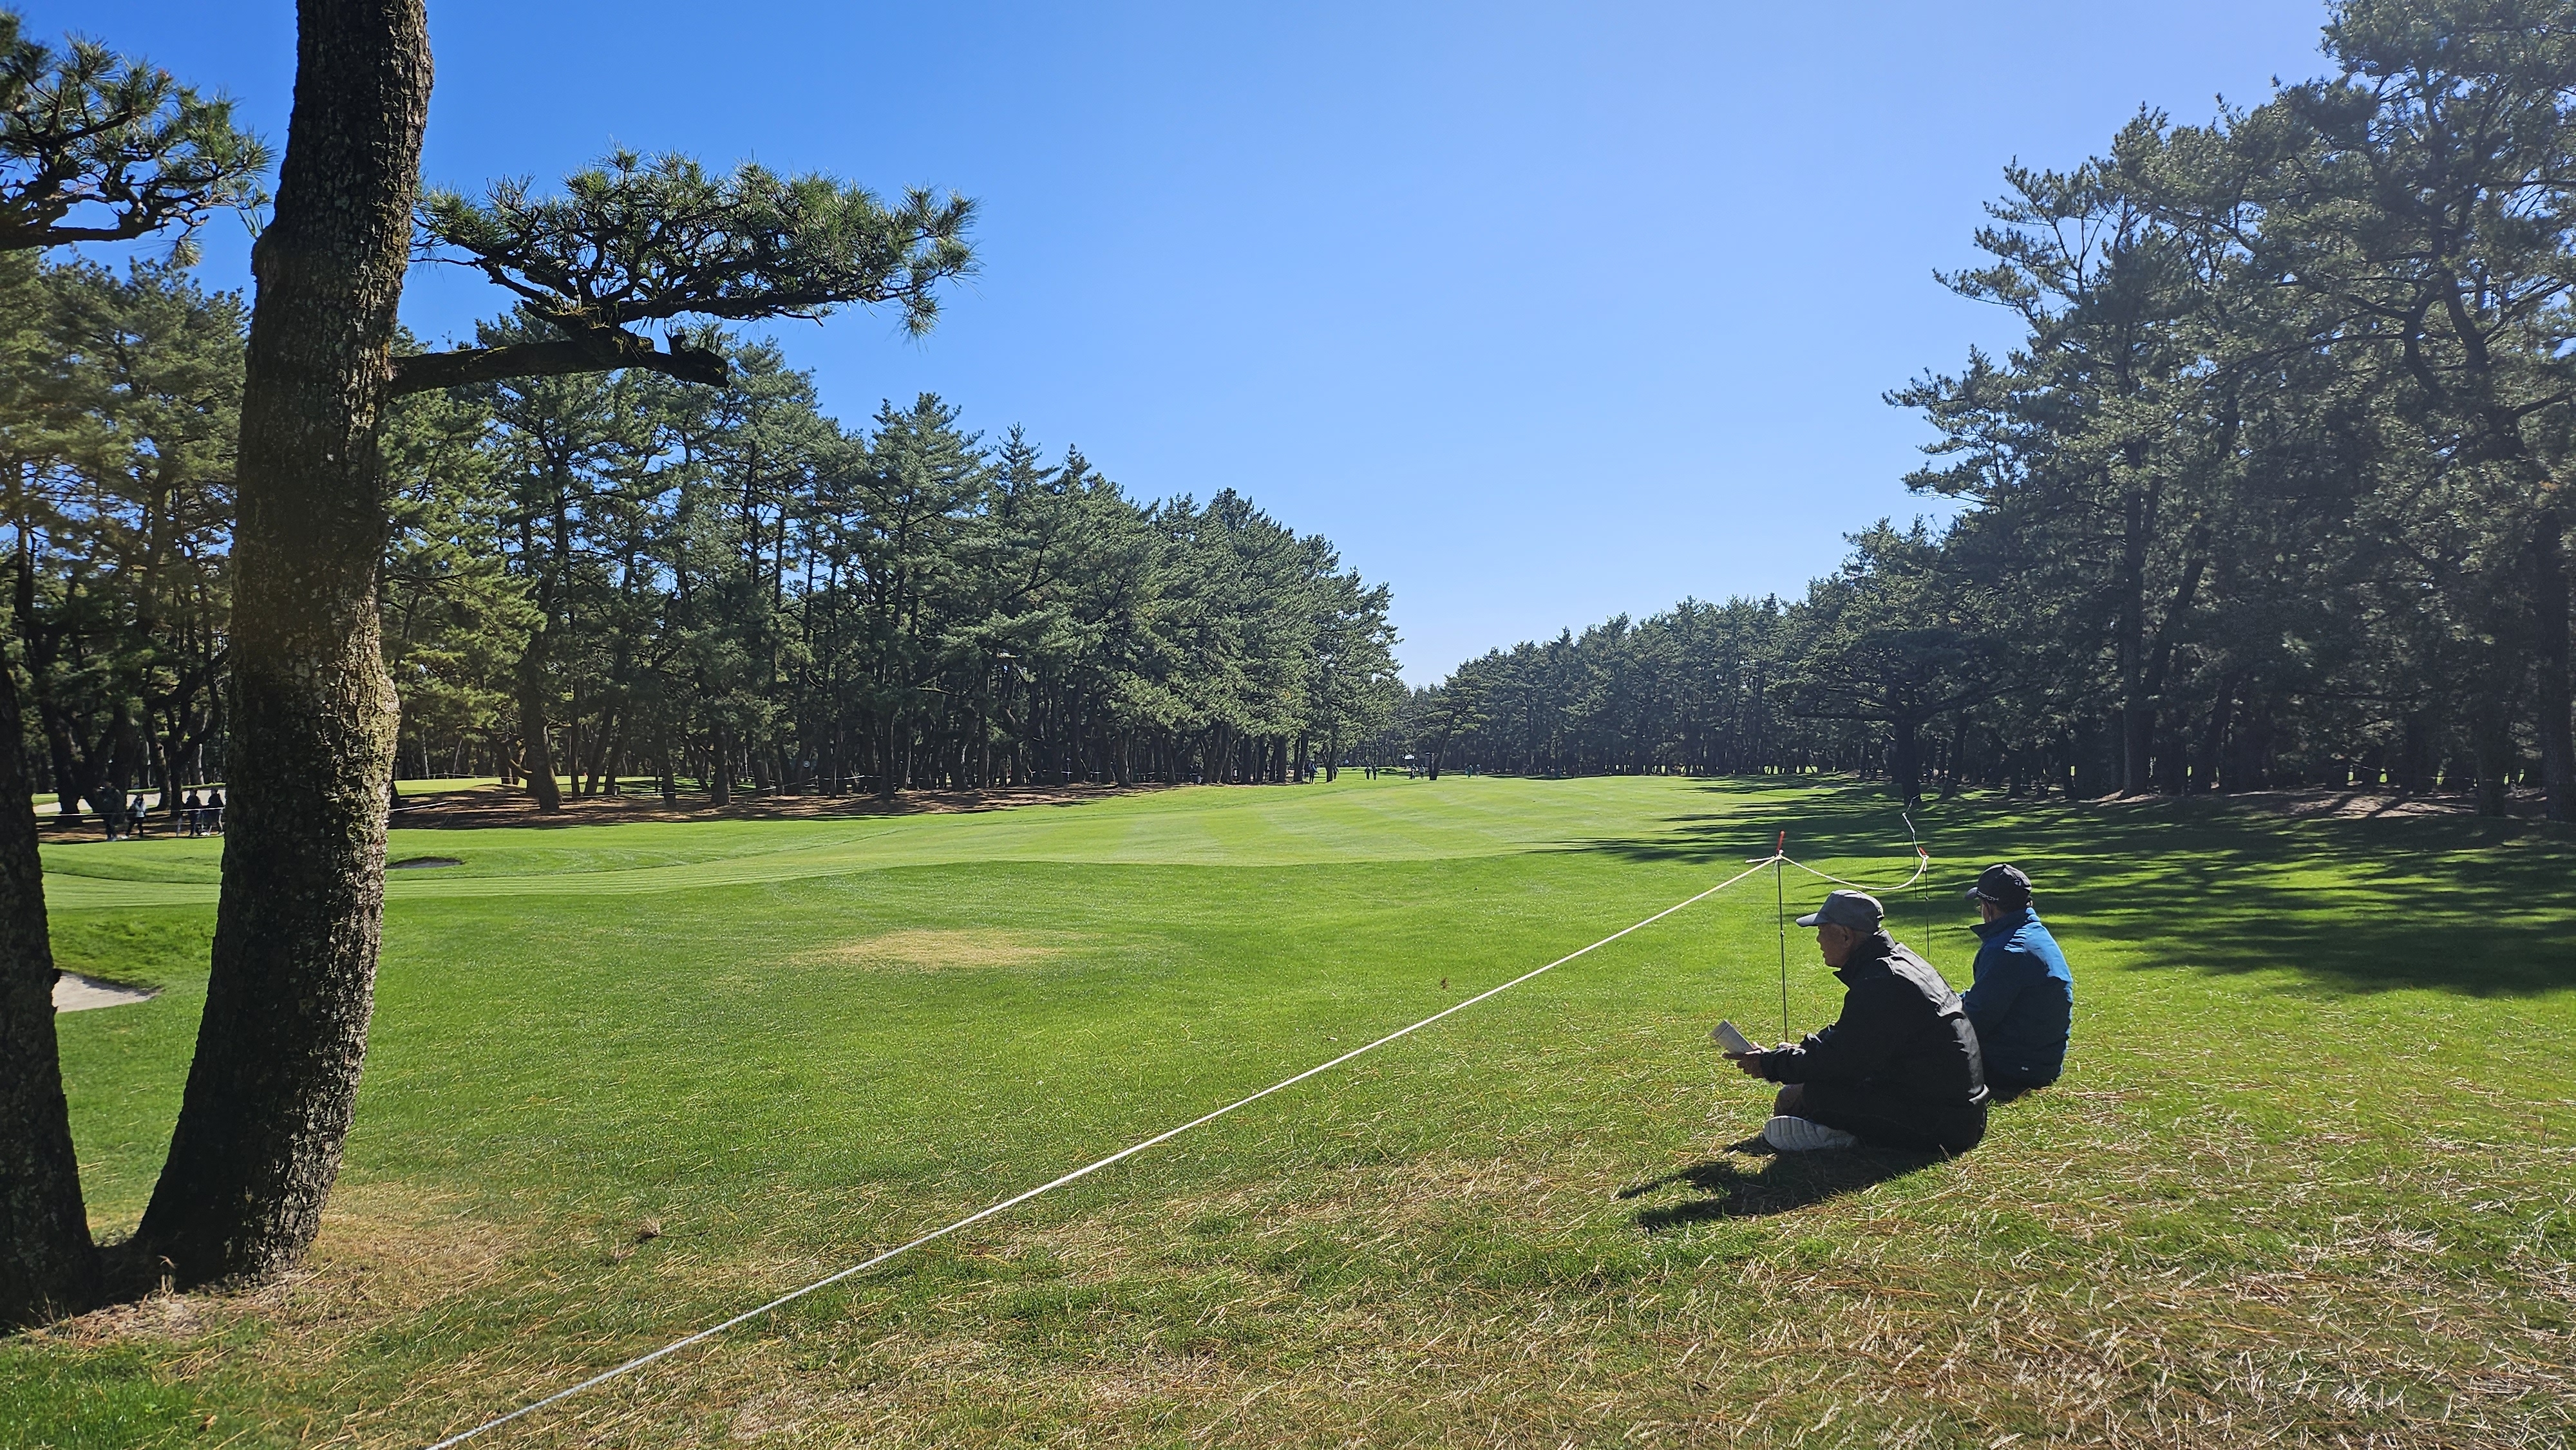 던롭 피닉스 토너먼트가 열리는 일본 미야자키의 피닉스 골프장 5번 홀 페어웨이가 소나무 숲으로 둘러싸여 있다.